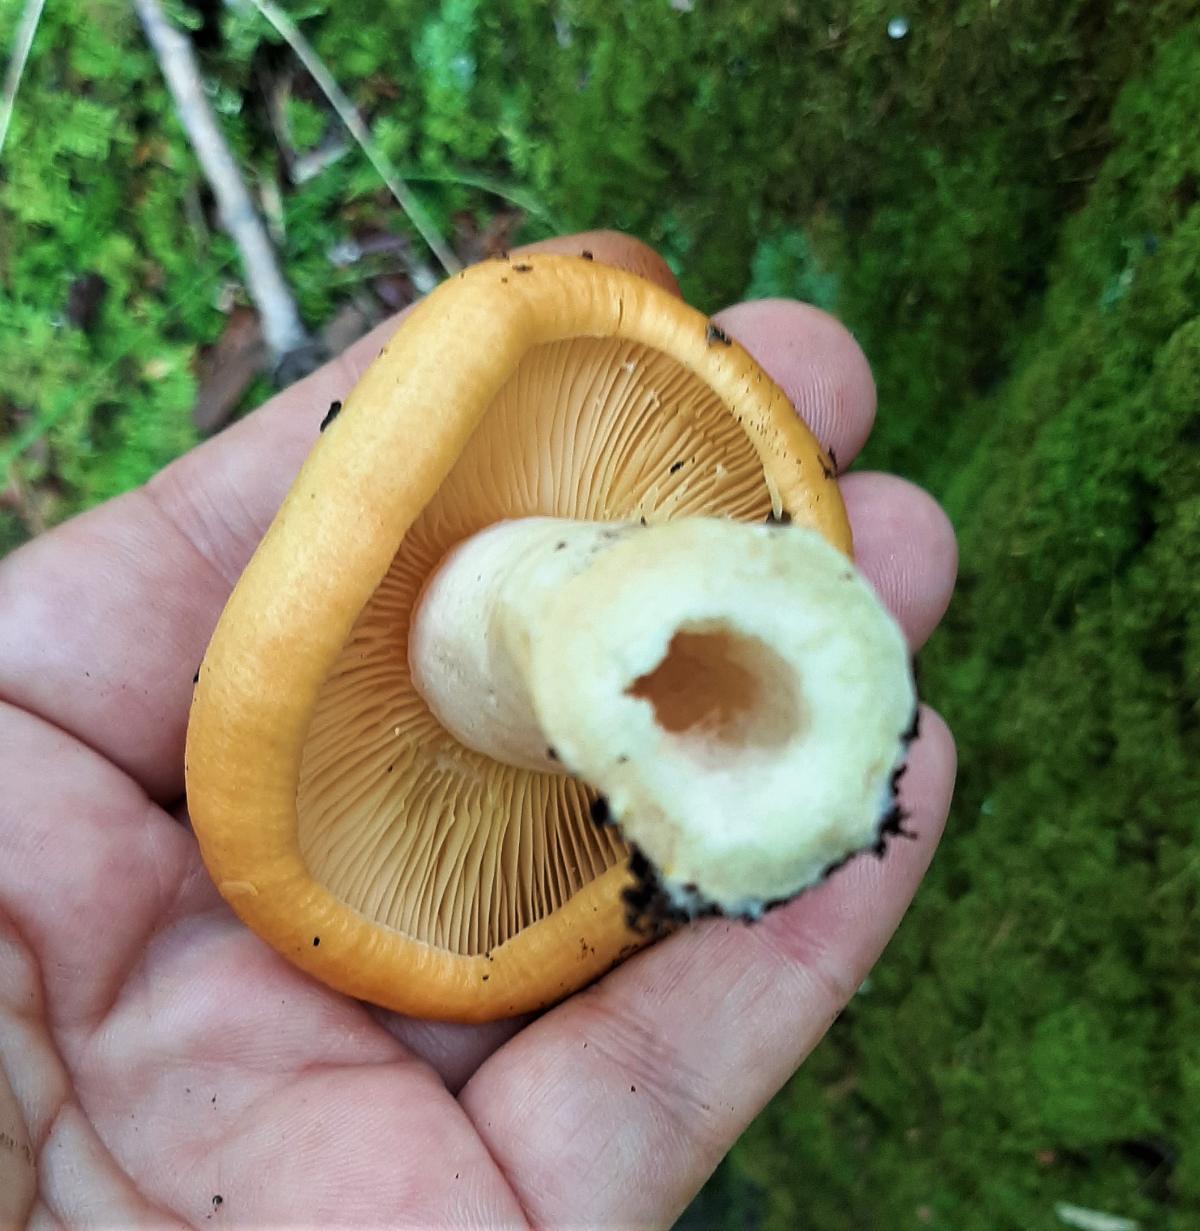 mushroom stem hollow inside